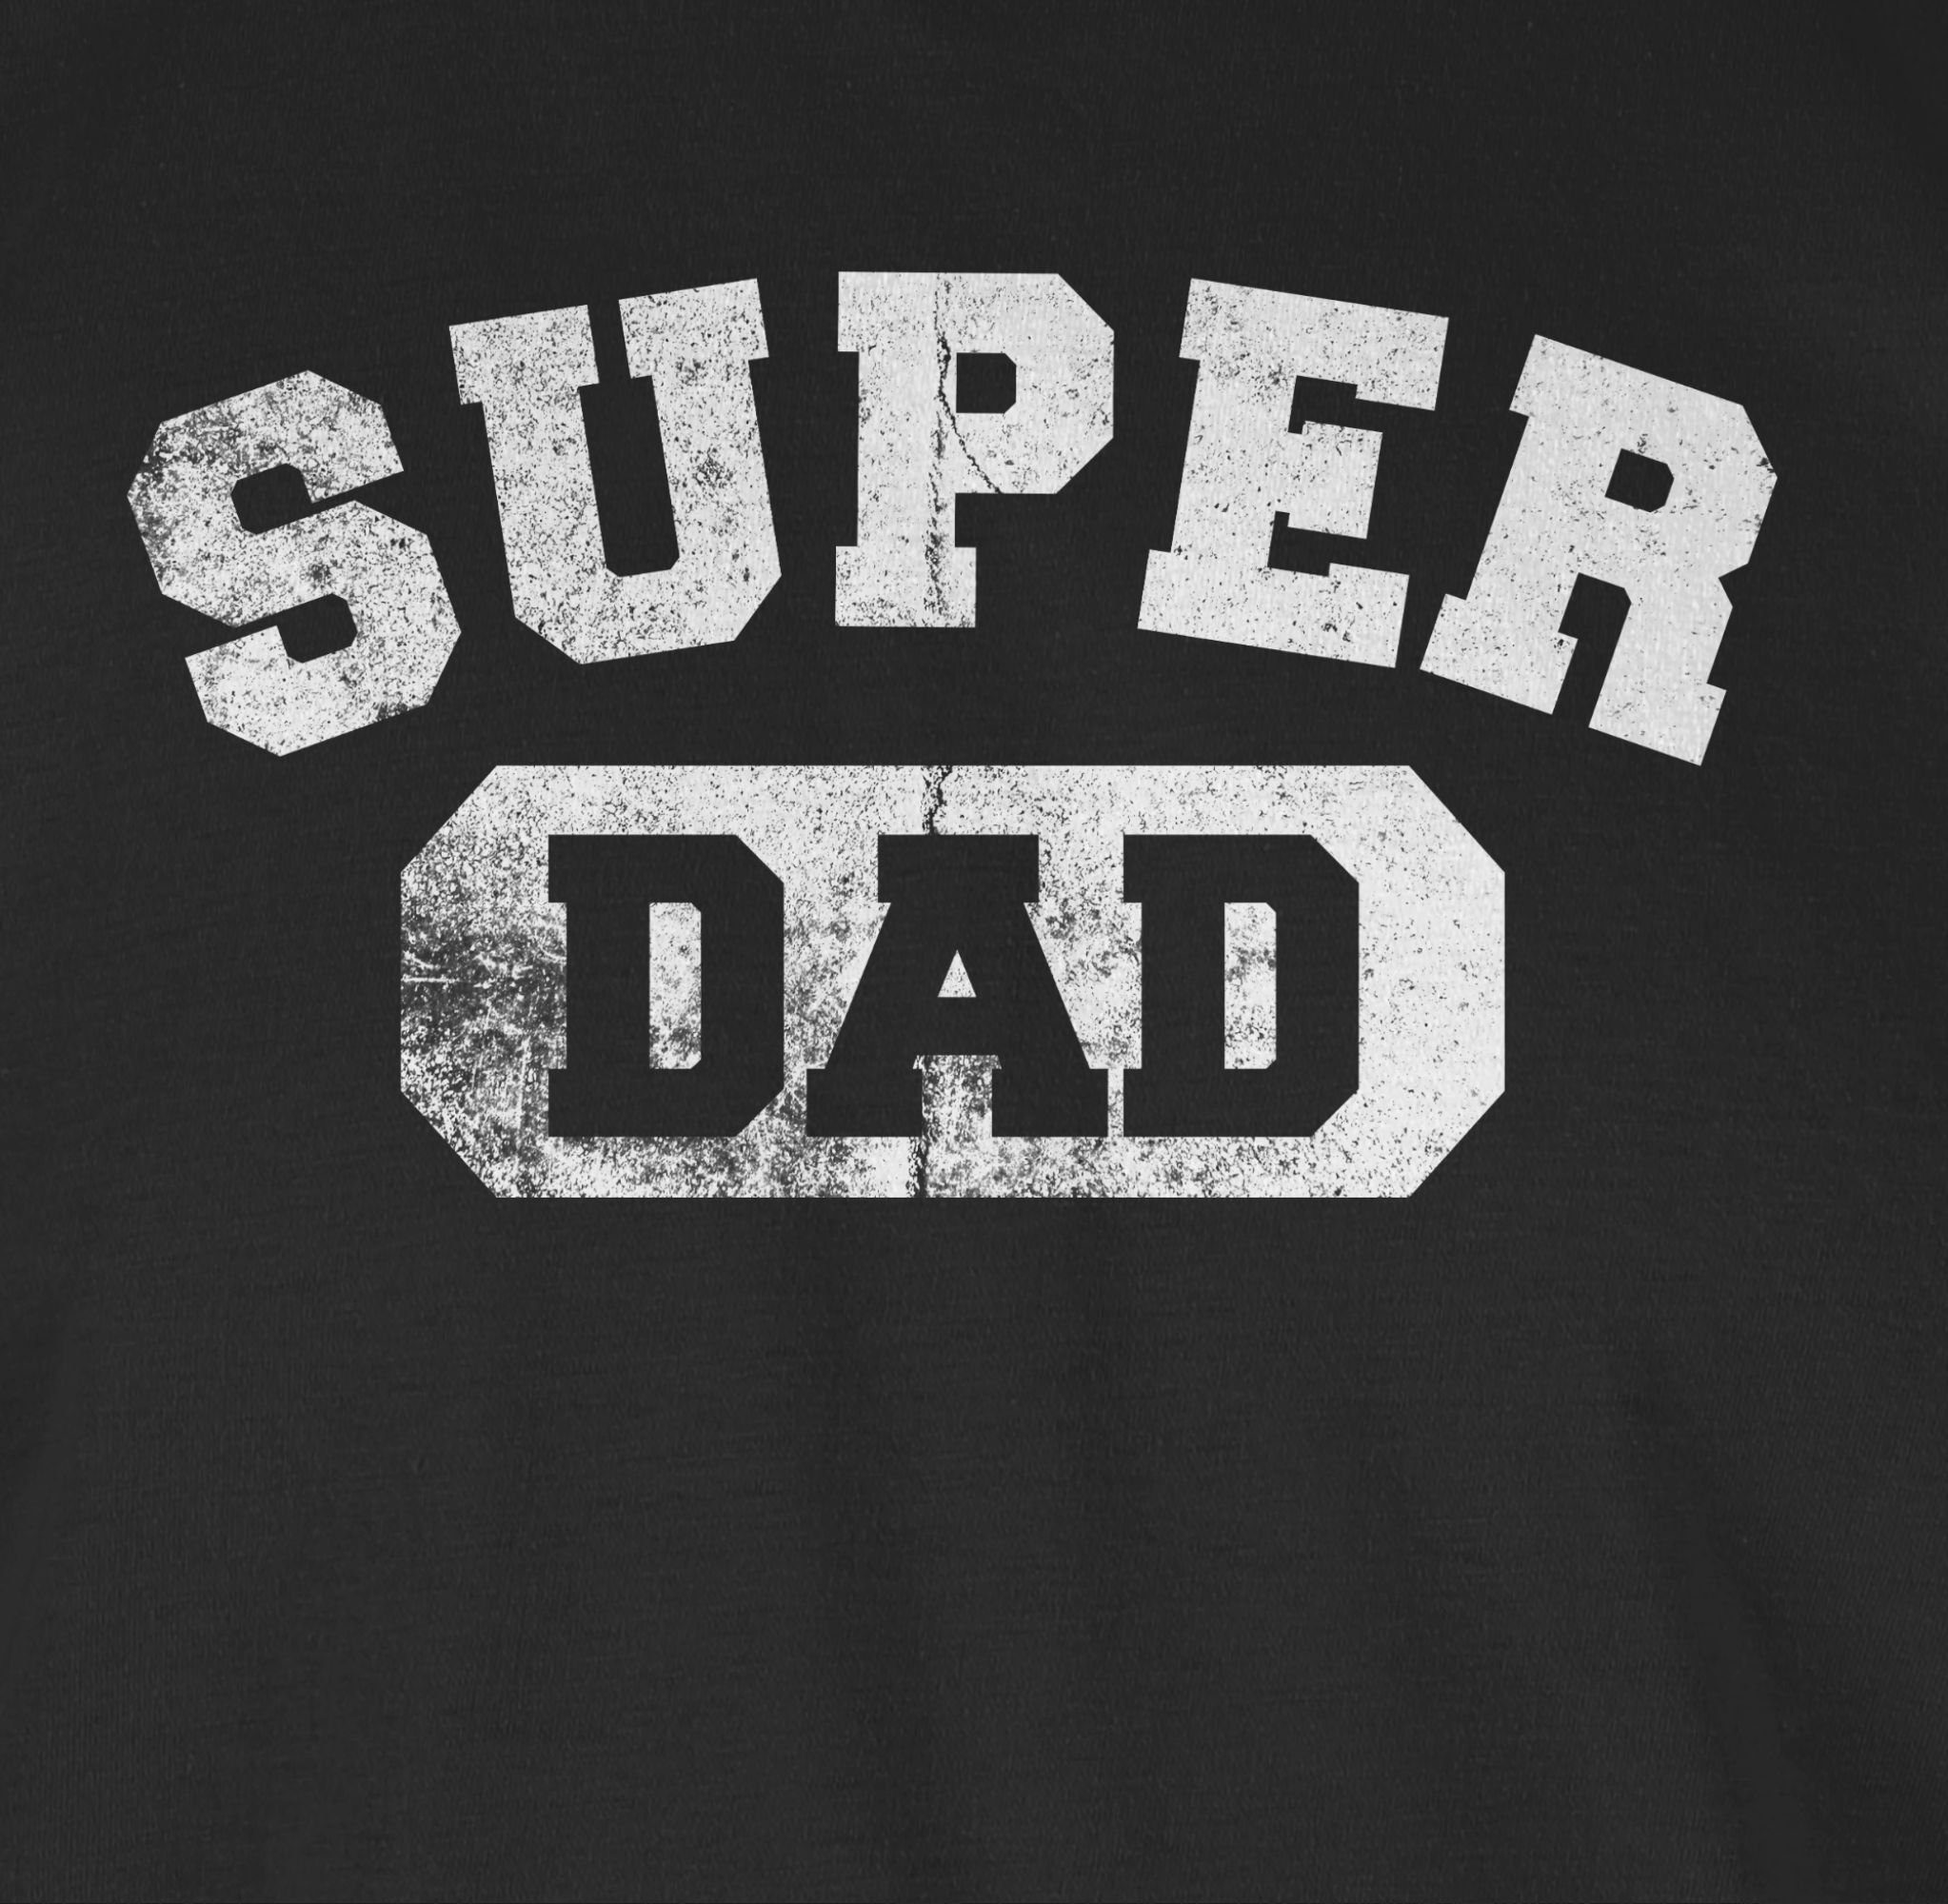 Shirtracer T-Shirt Super Dad Bester 02 Schwarz für Vatertag Geschenk Geschenk Superheld Papa Papa